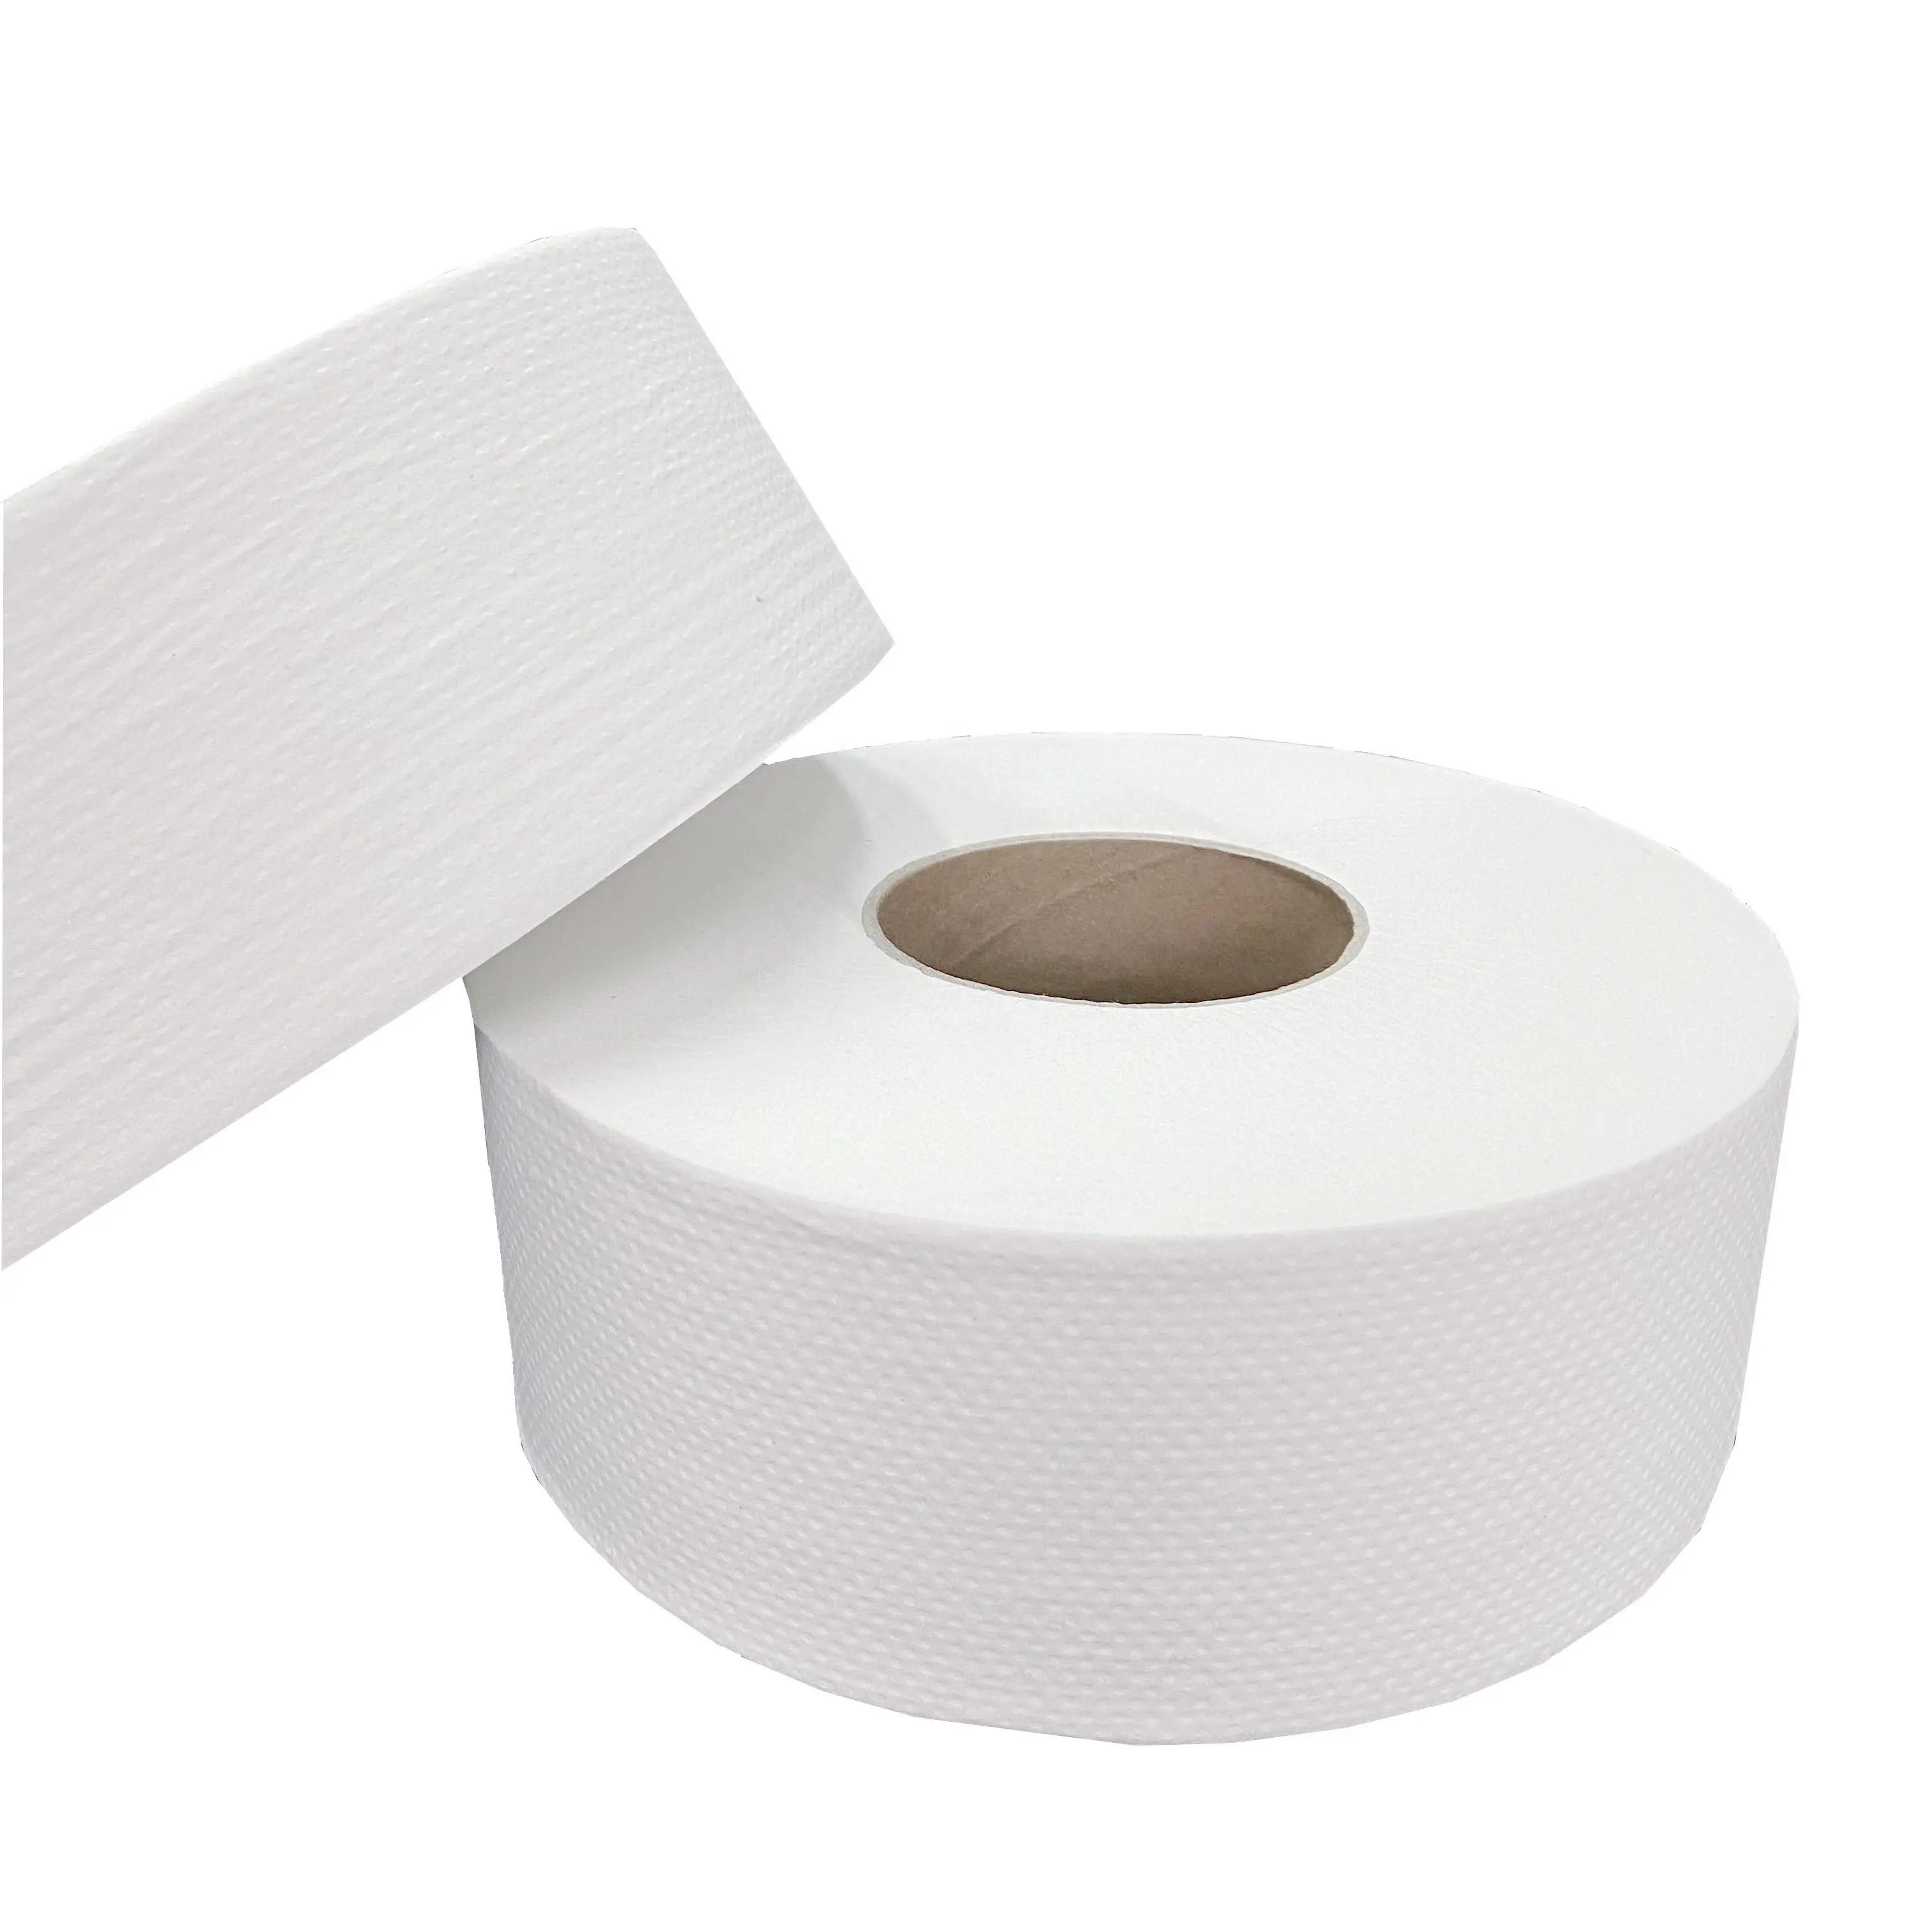 Flaches doppels chichtiges Toiletten papier mit großem Teller